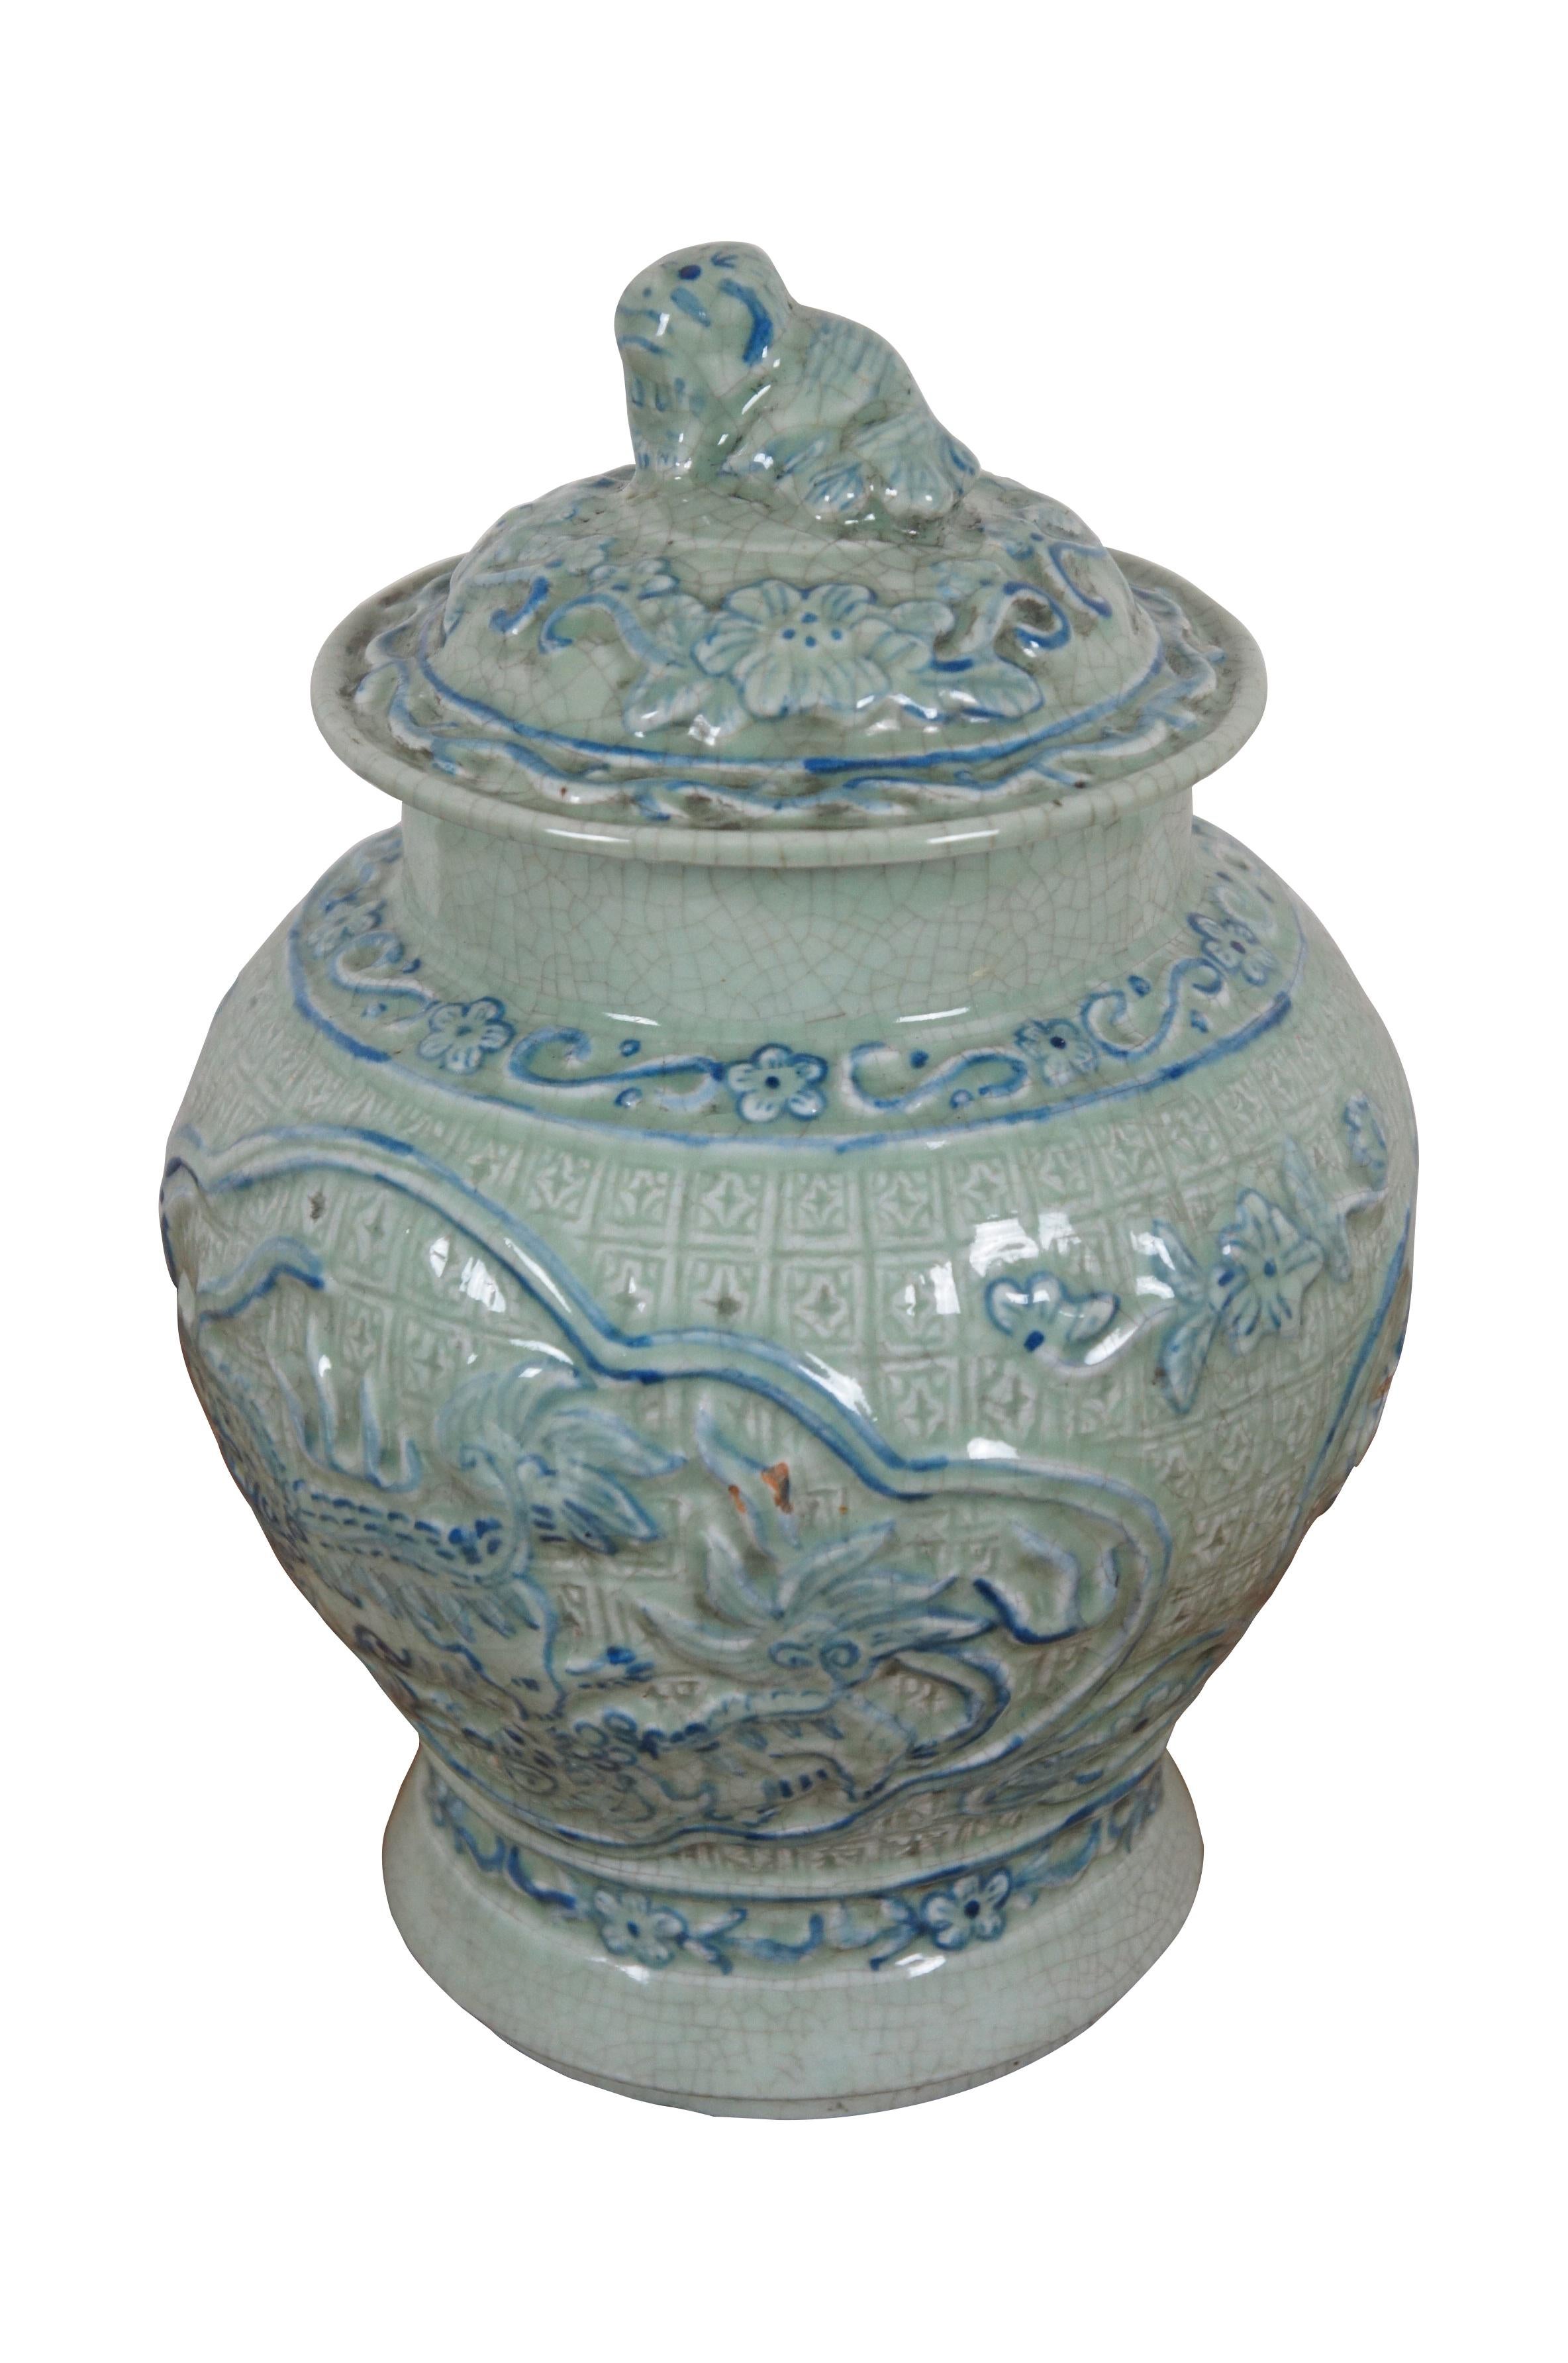 Chinesische Ingwerdose / Urne mit Deckel aus blassem zeladongrünem Porzellan mit Craquelé-Glasur und blauer Bemalung. Aufwändig geformt mit floralen Mustern und Wächterlöwen / Fu-Hunden.

Abmessungen:
7,75